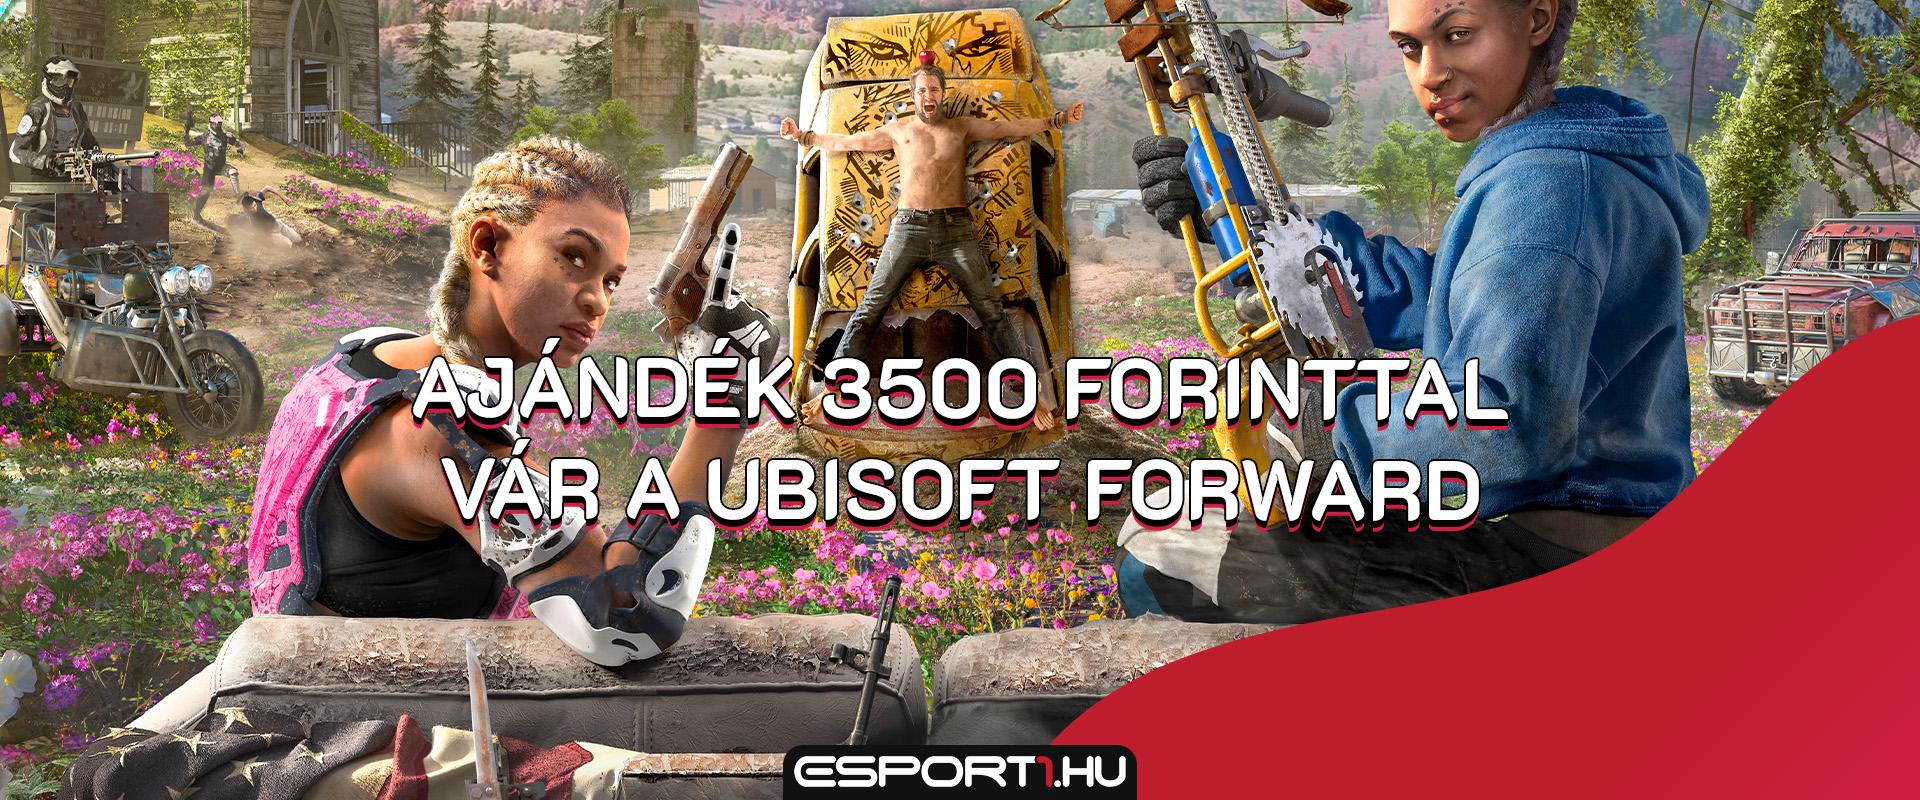 Akciófigyelő: Ajándék 3500 forinttal vár a Ubisoft Forward vására